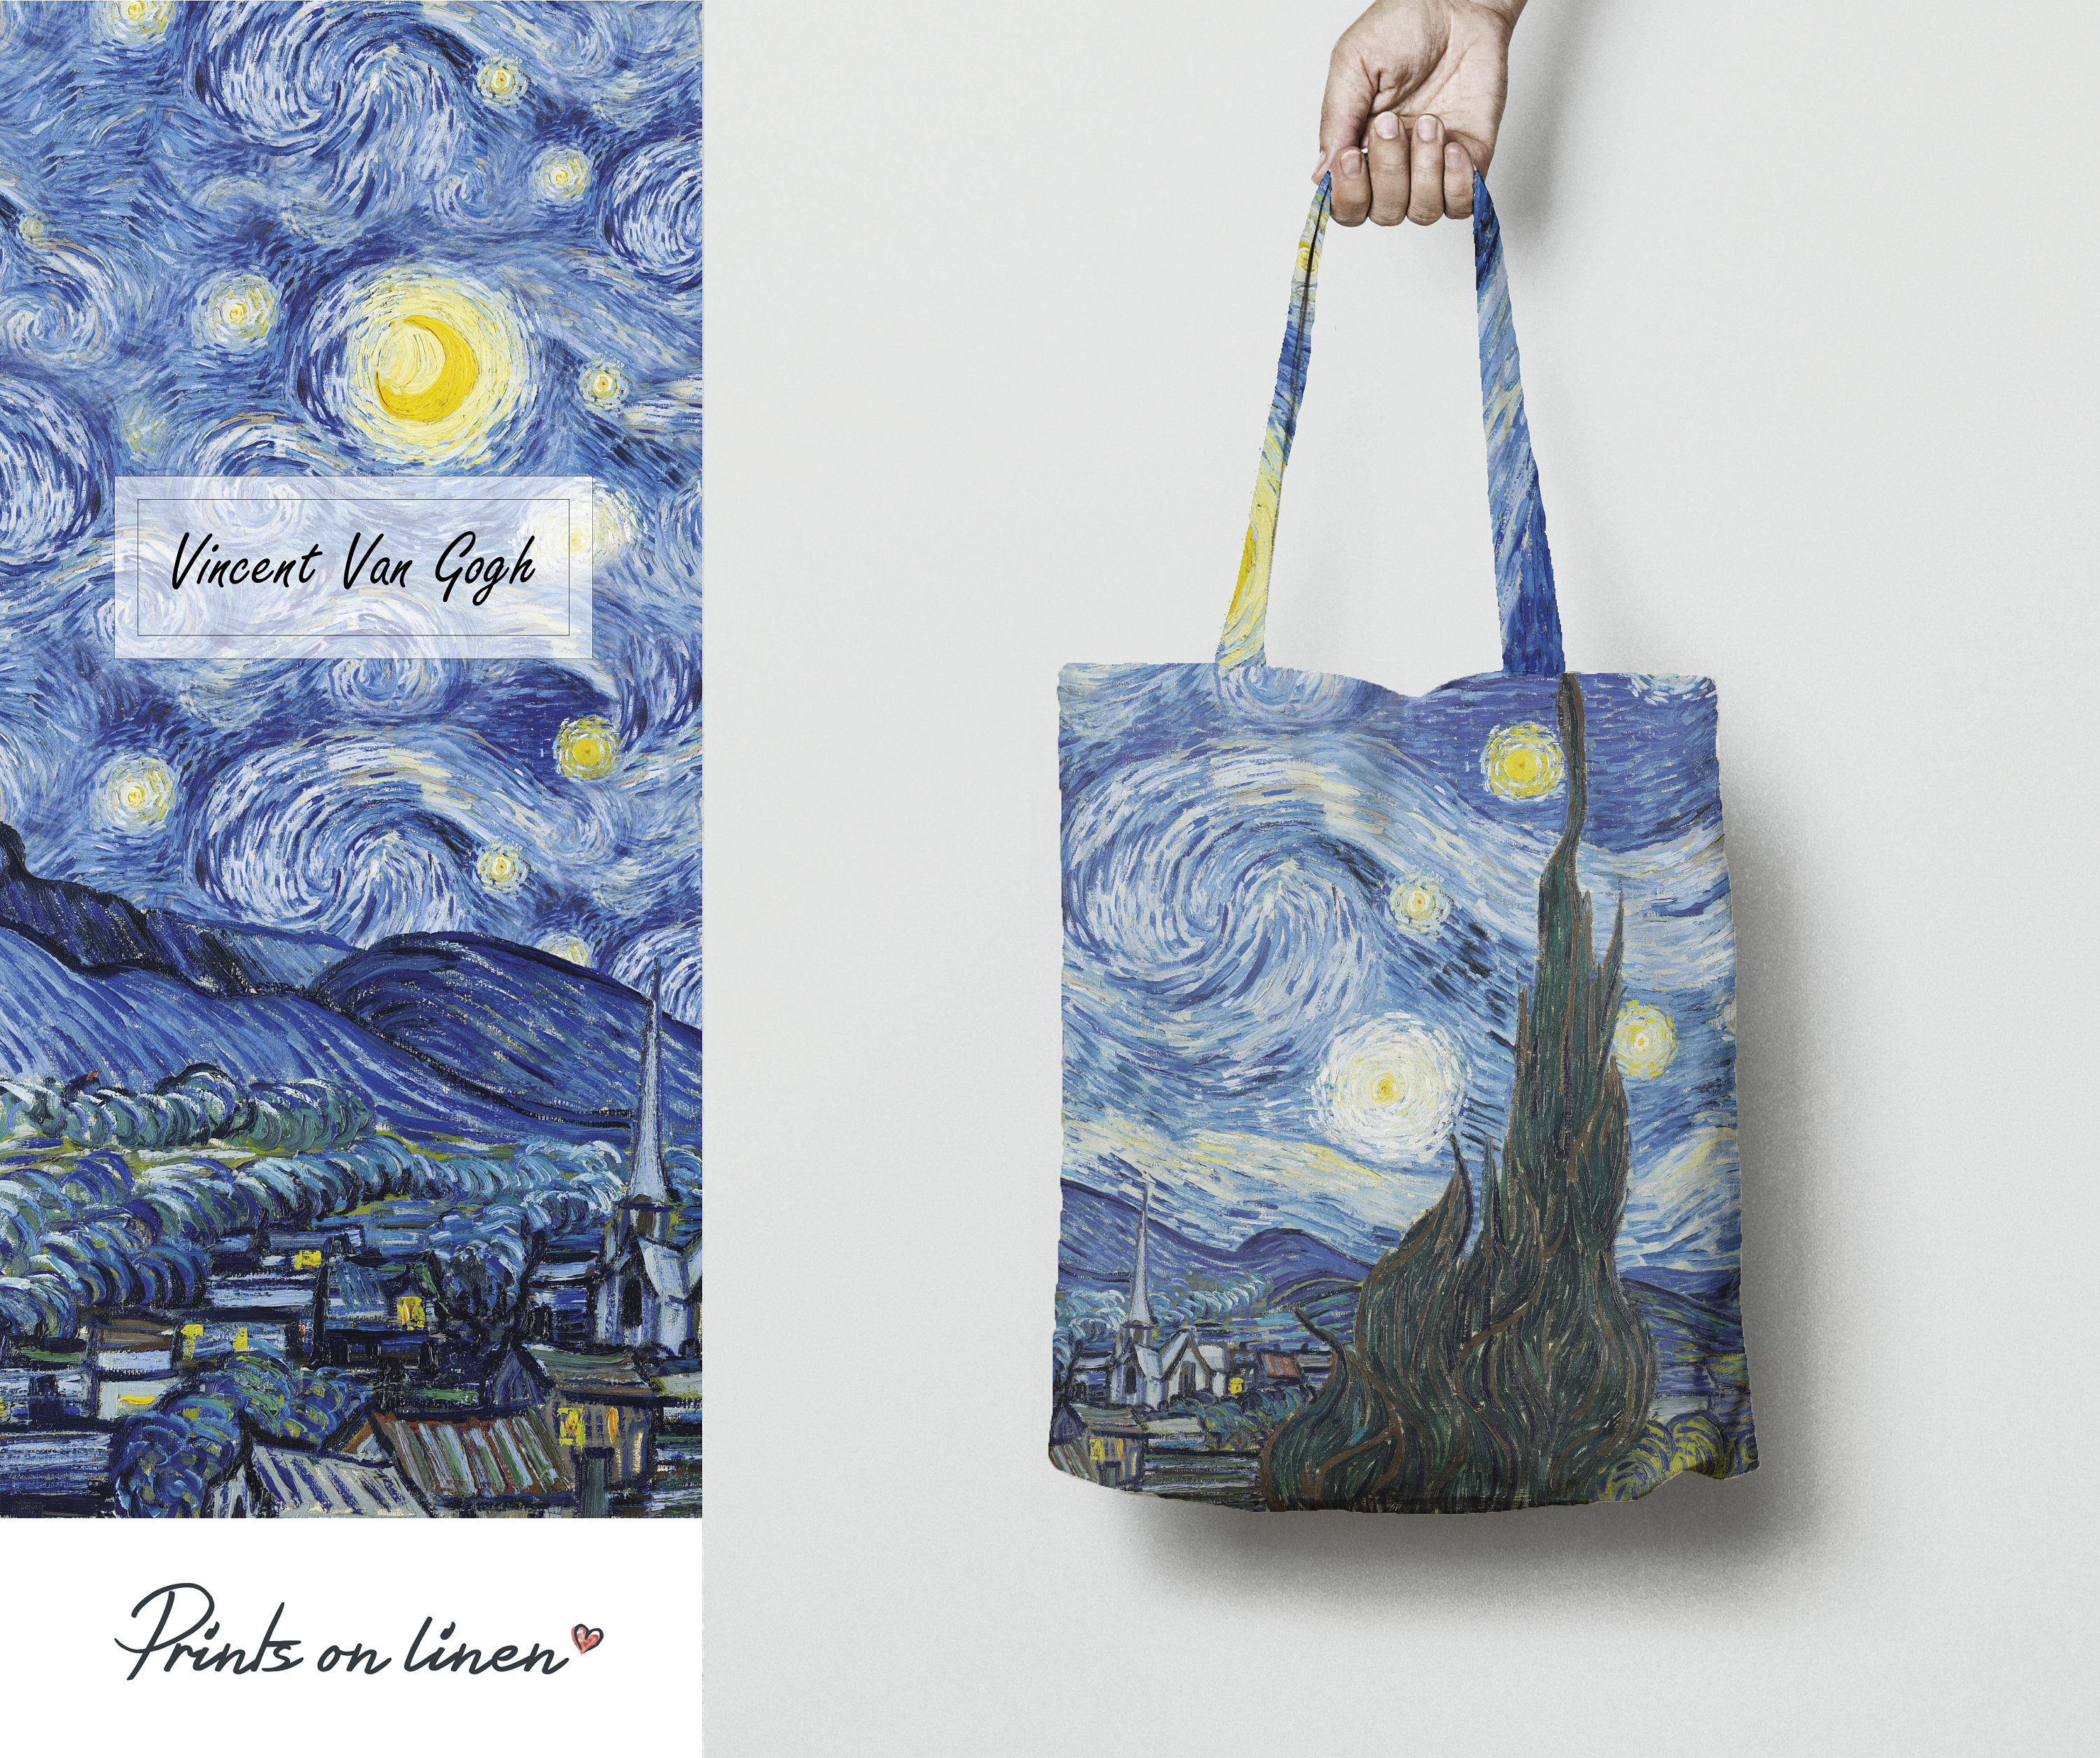 Van Gogh Starry Night Tote Bag